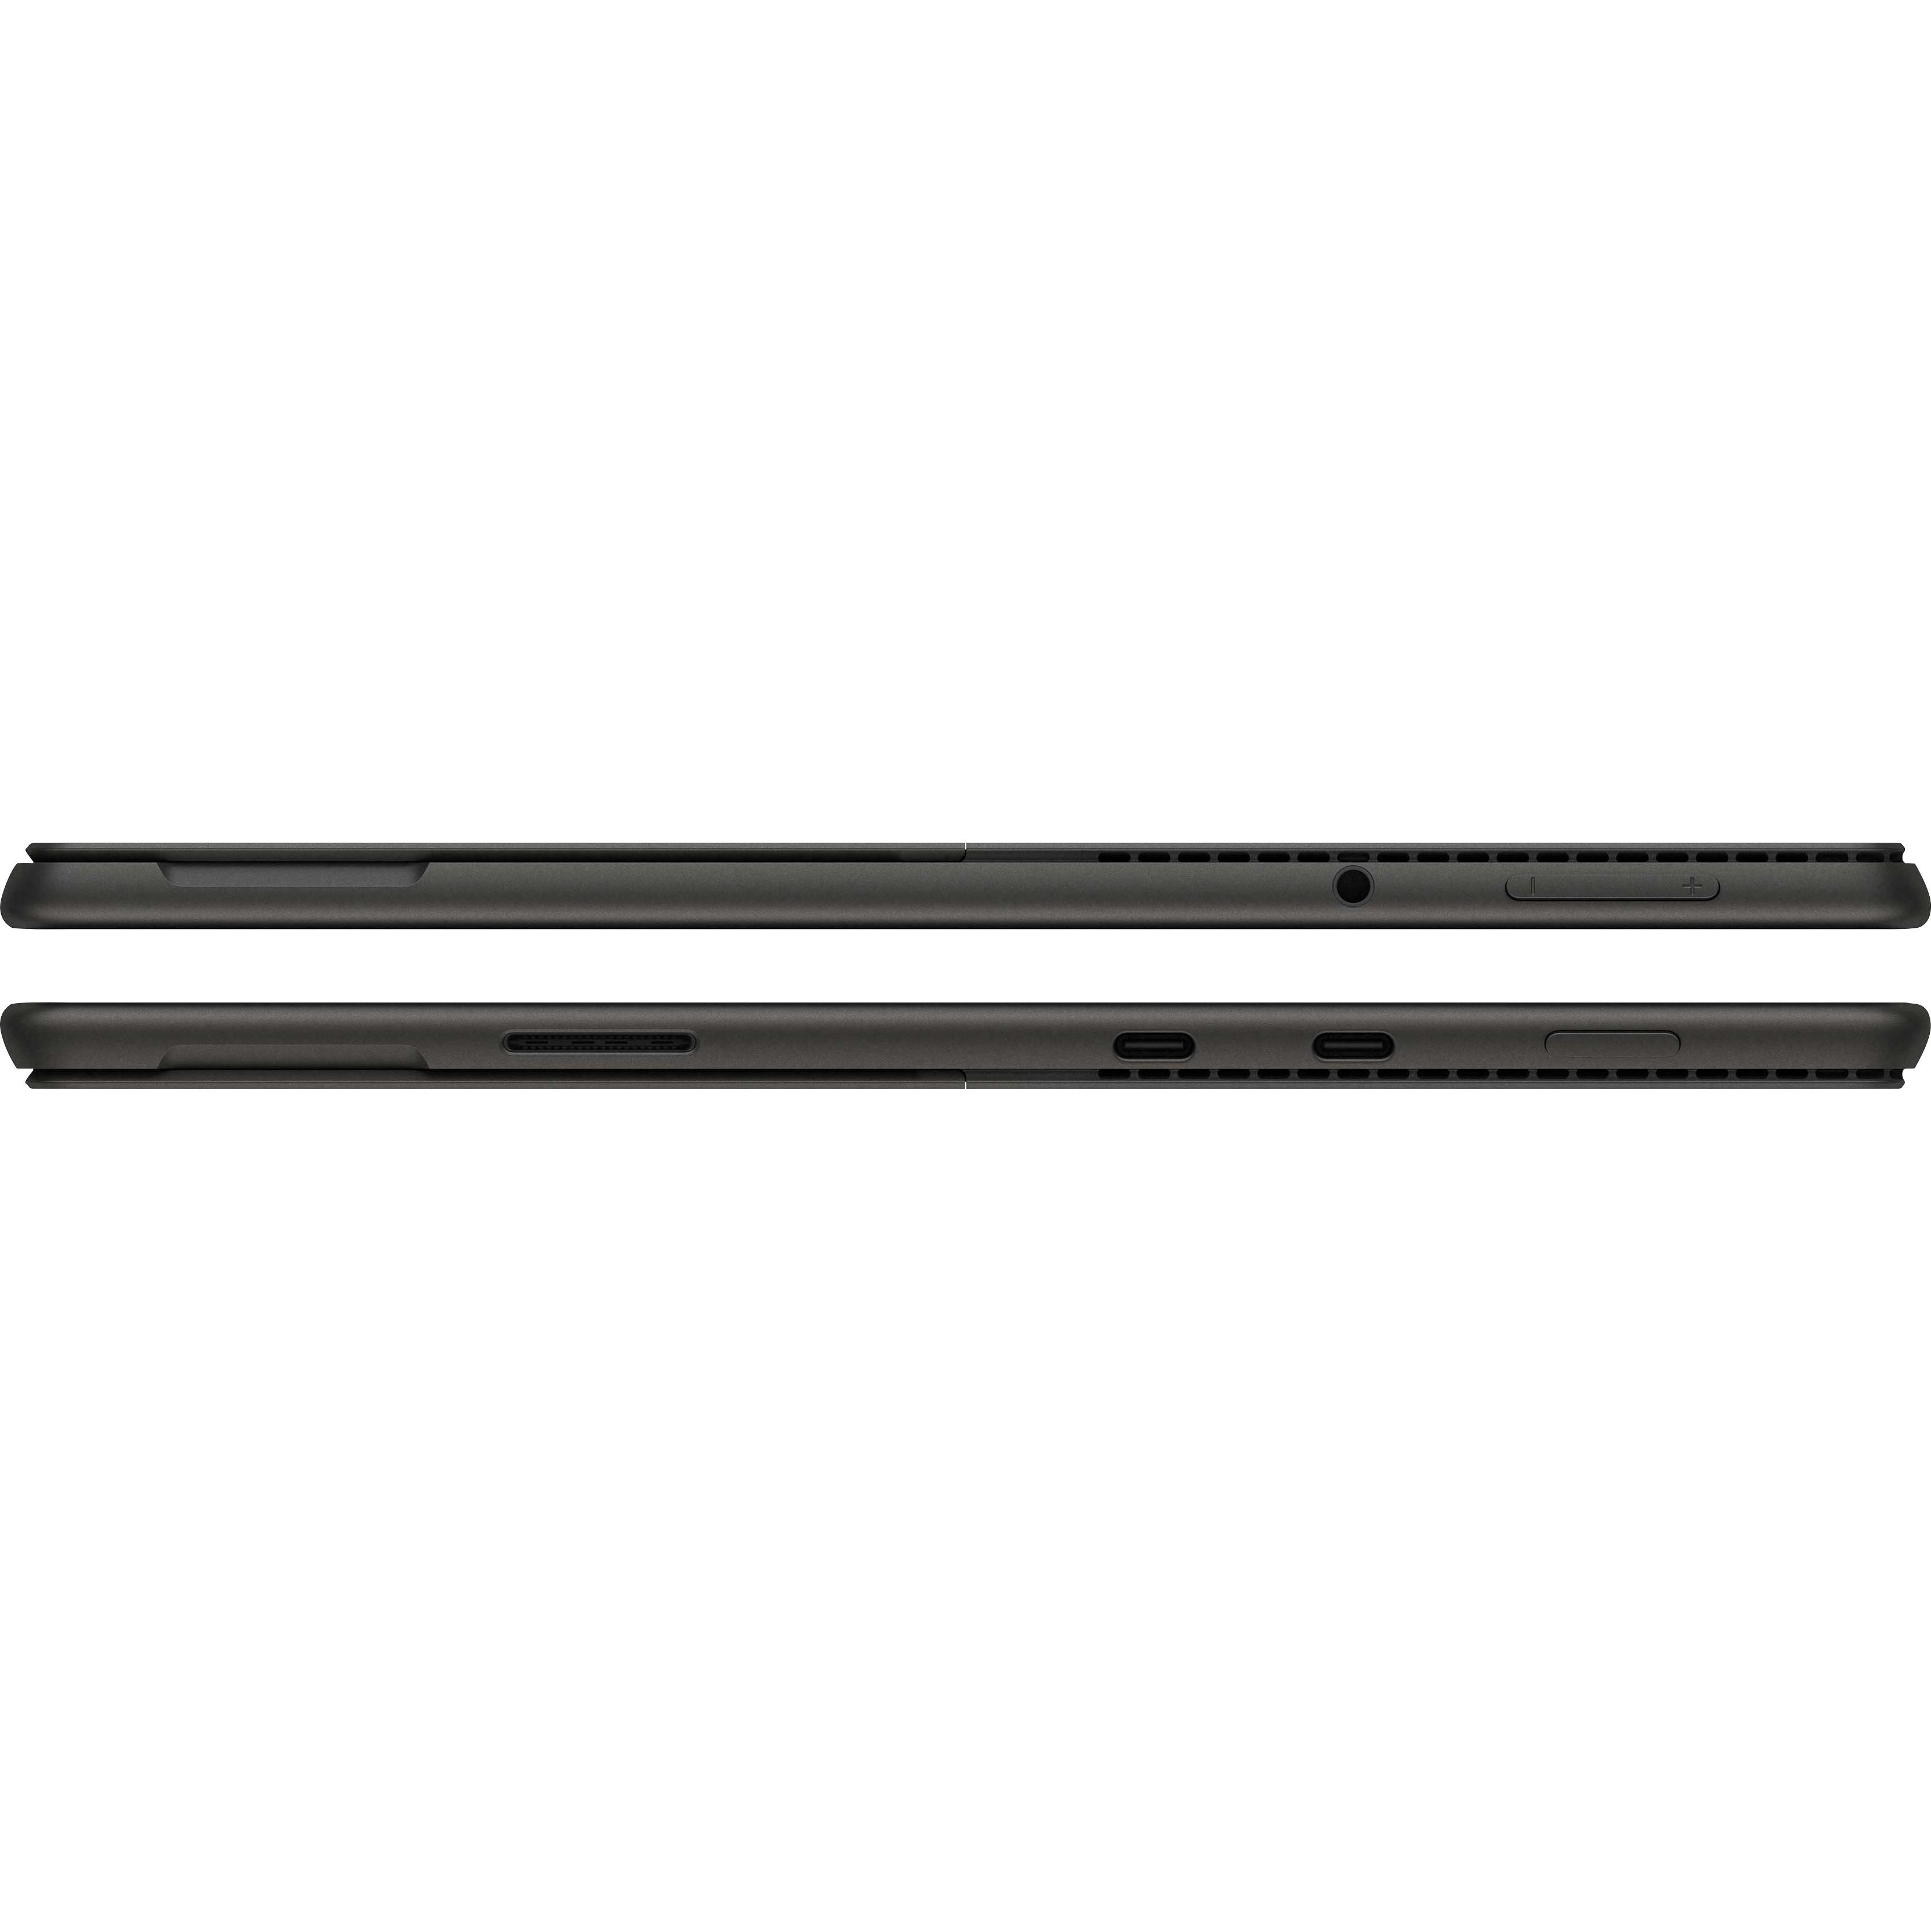 Microsoft Surface Pro 8 ( i5 l 8GB l 256GB )